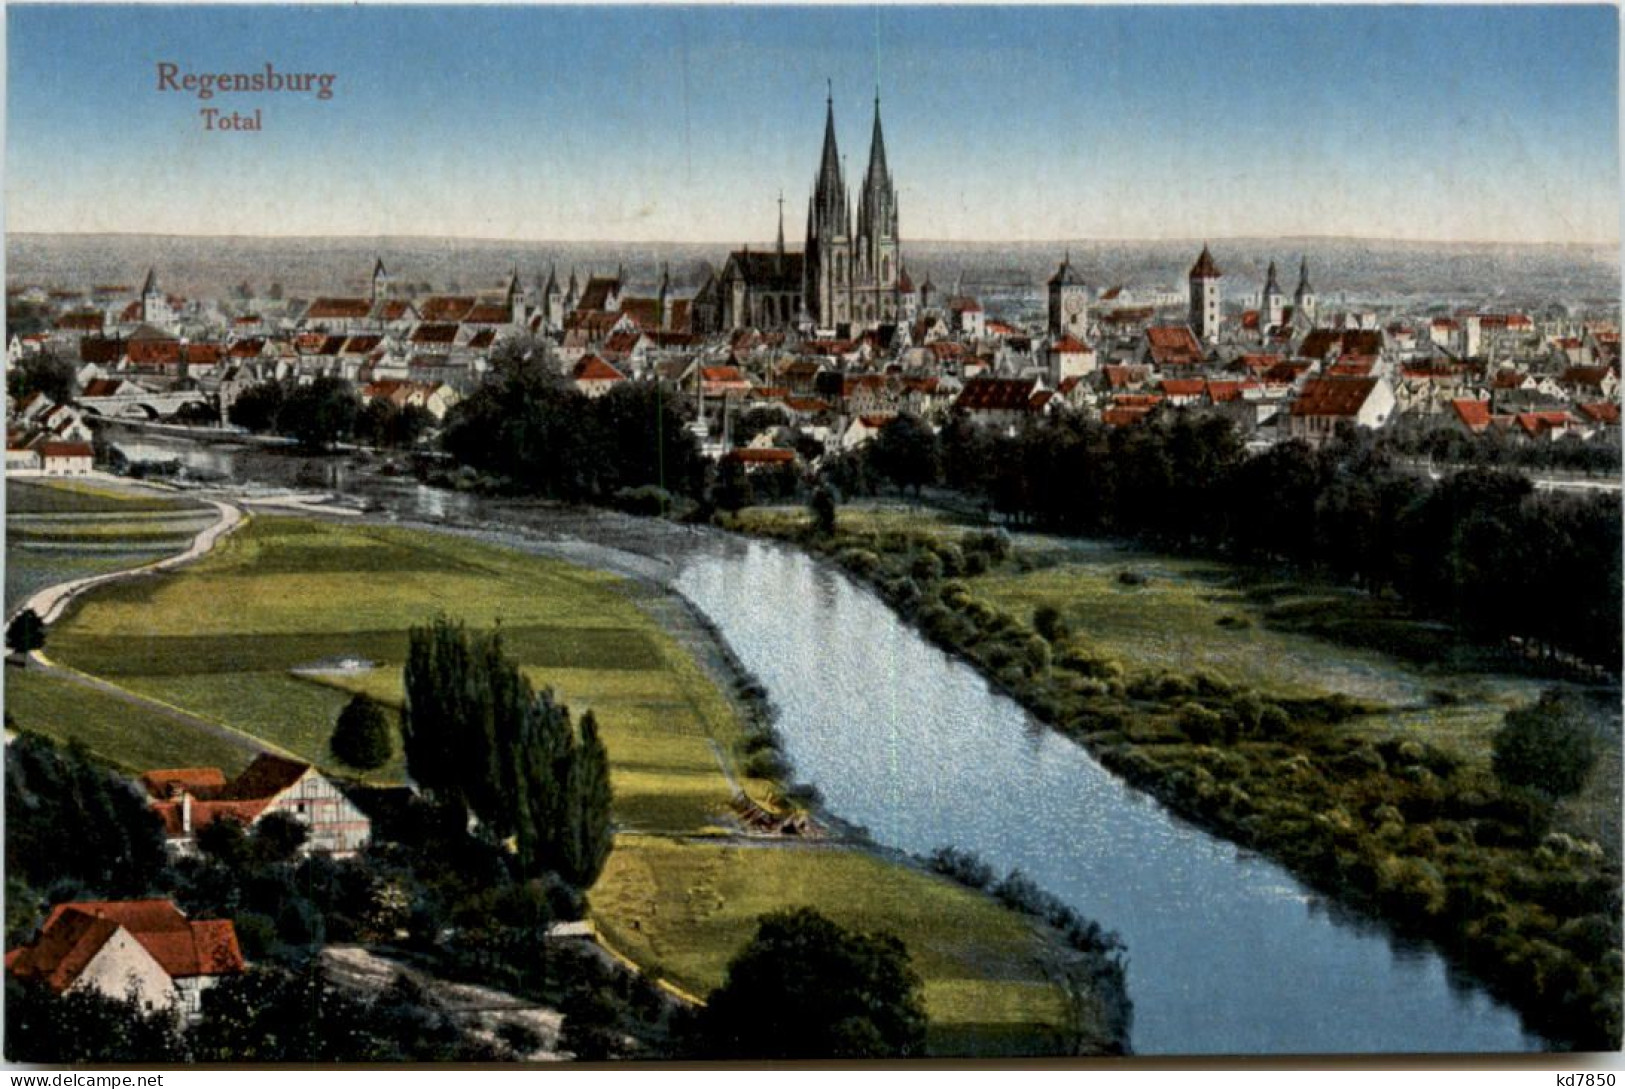 Regensburg - Total - Regensburg